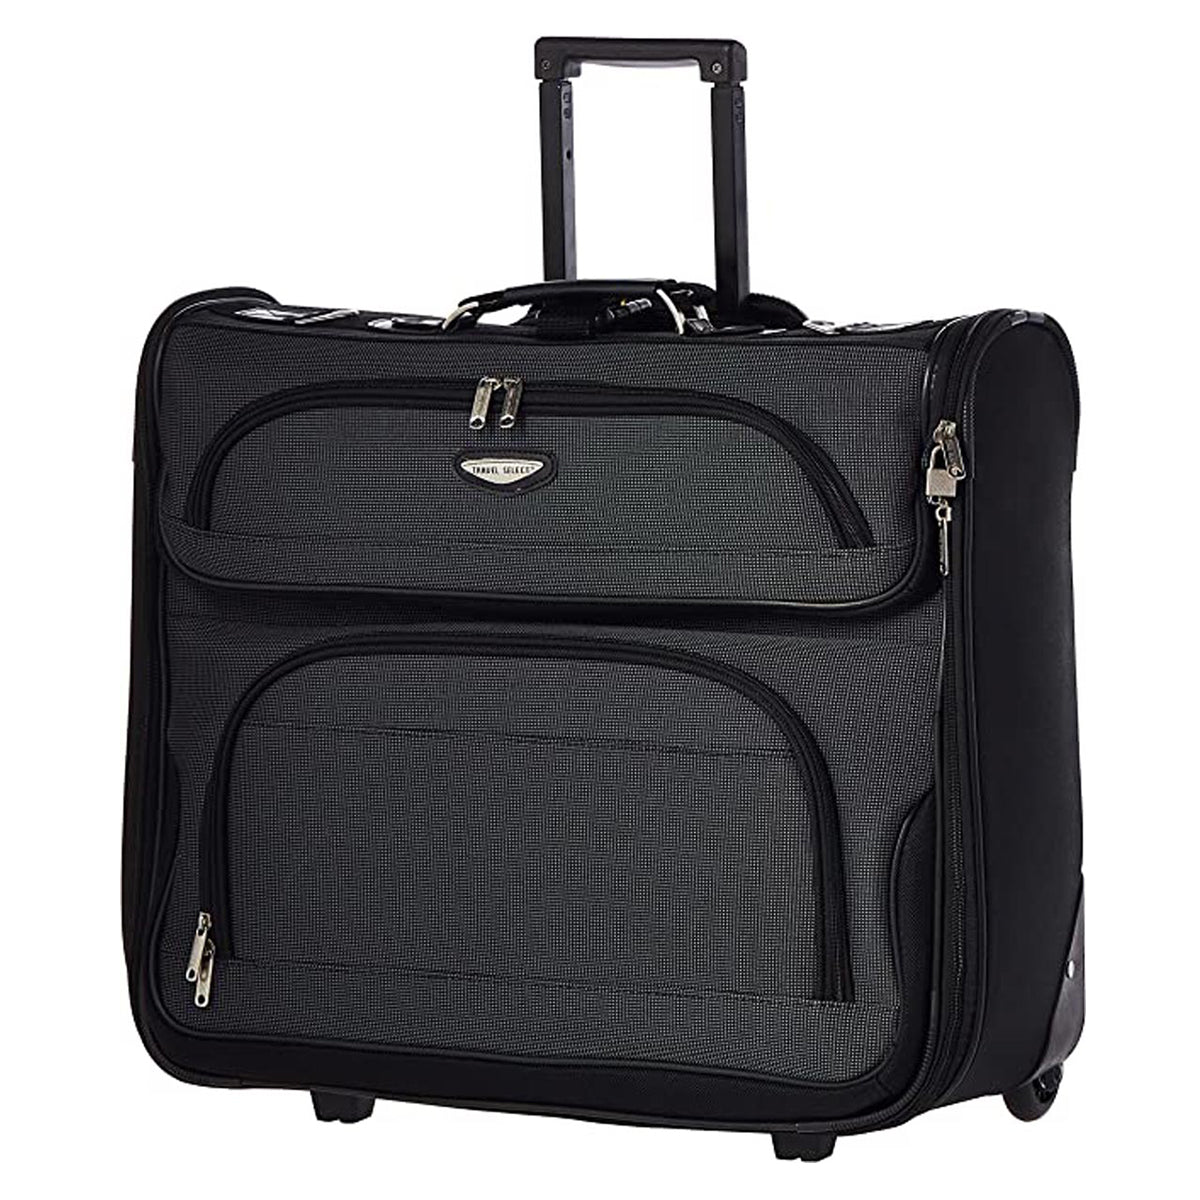 travel select naples hardside luggage